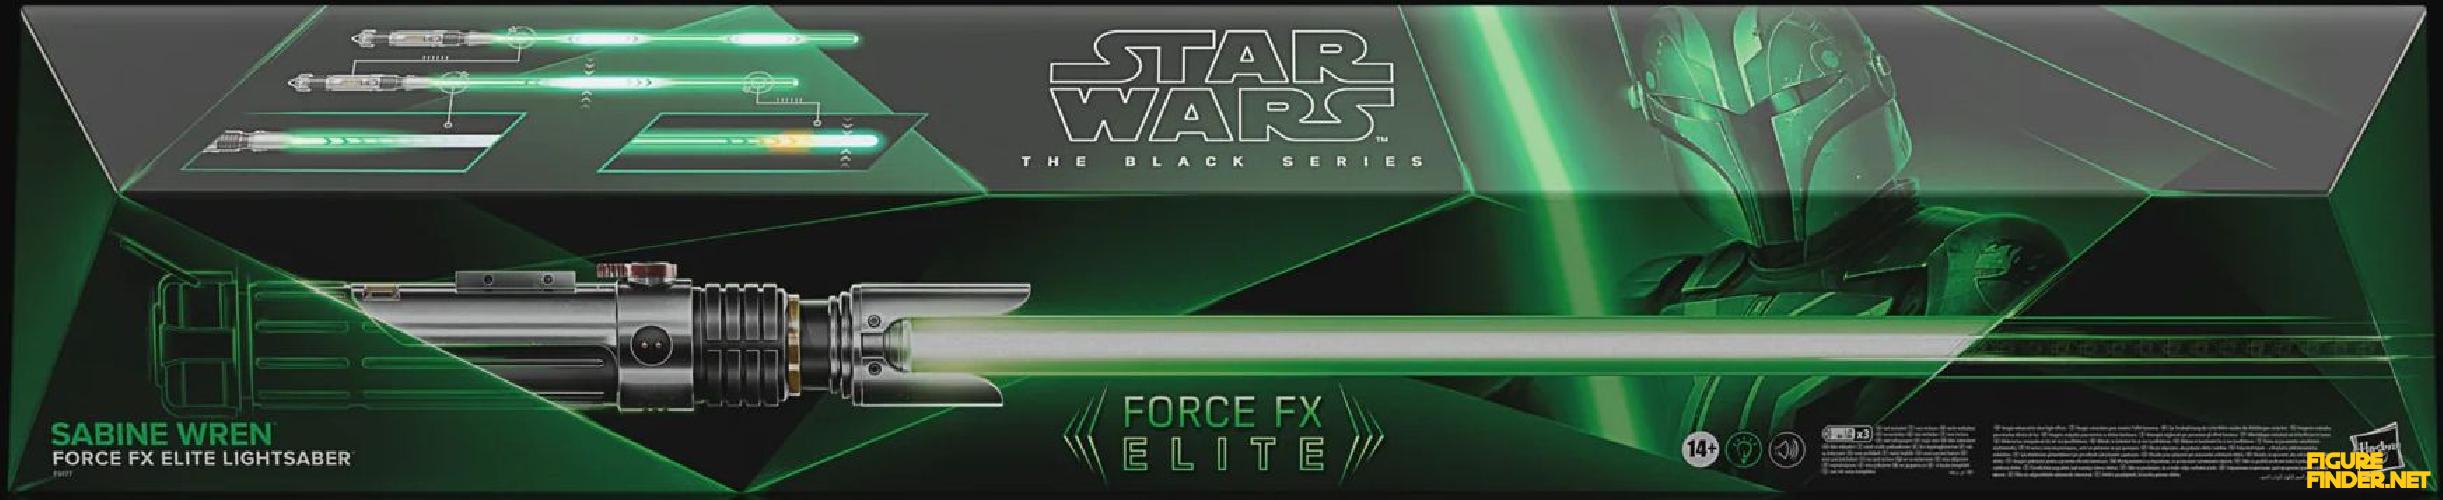 Sabine Wren Force FX Elite Lightsaber Product Image